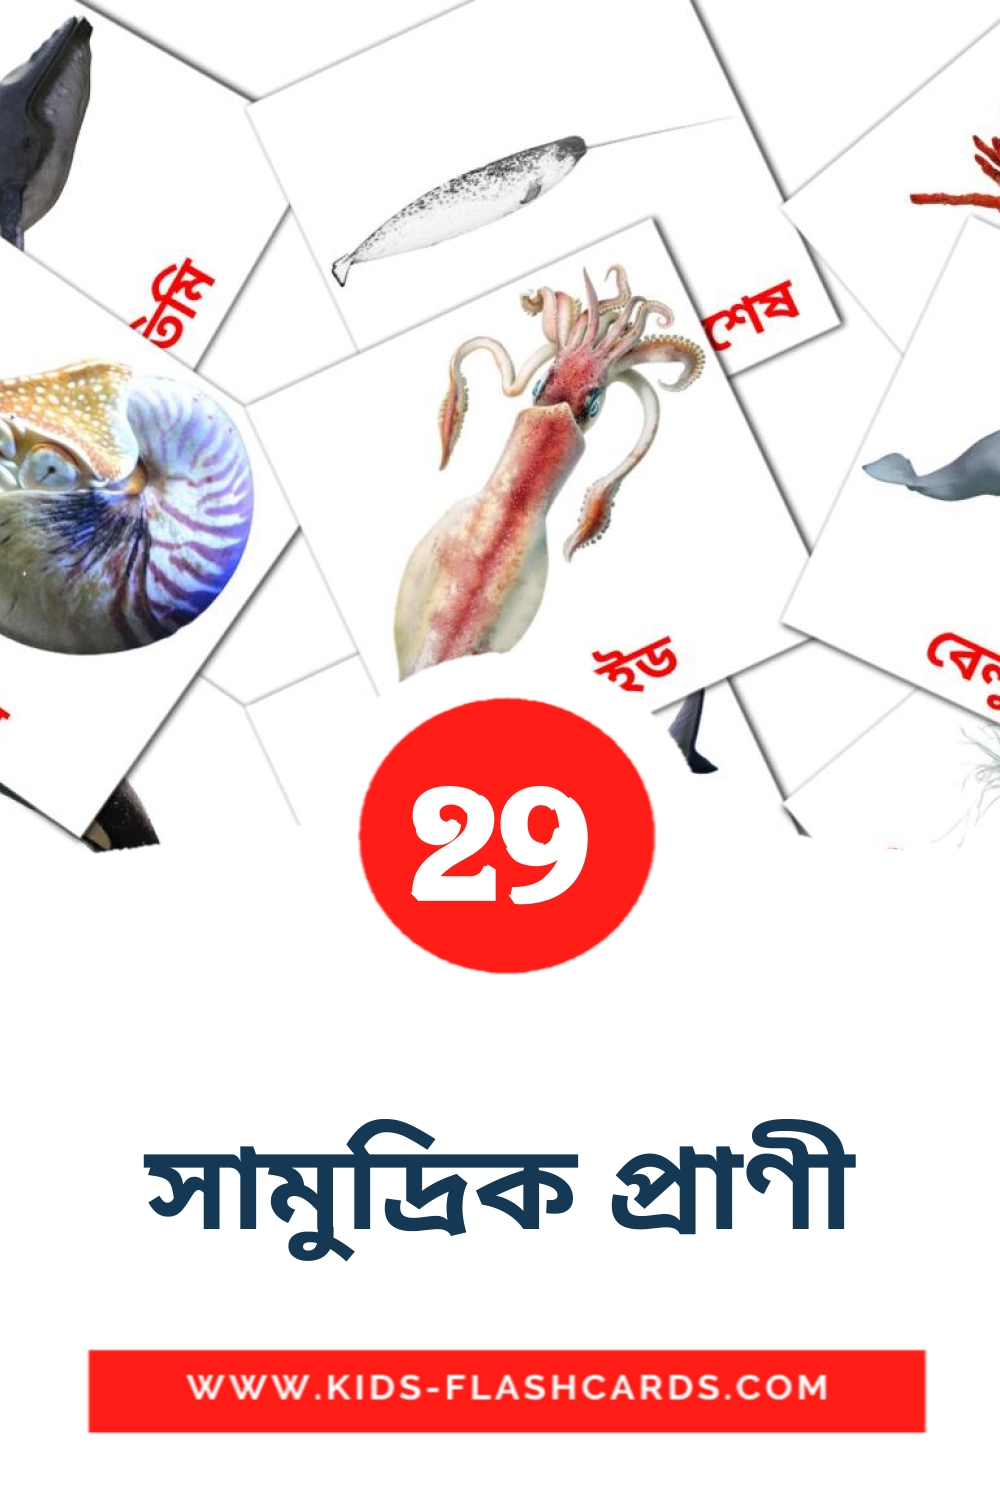 29 carte illustrate di সামুদ্রিক প্রাণী per la scuola materna in bengalese